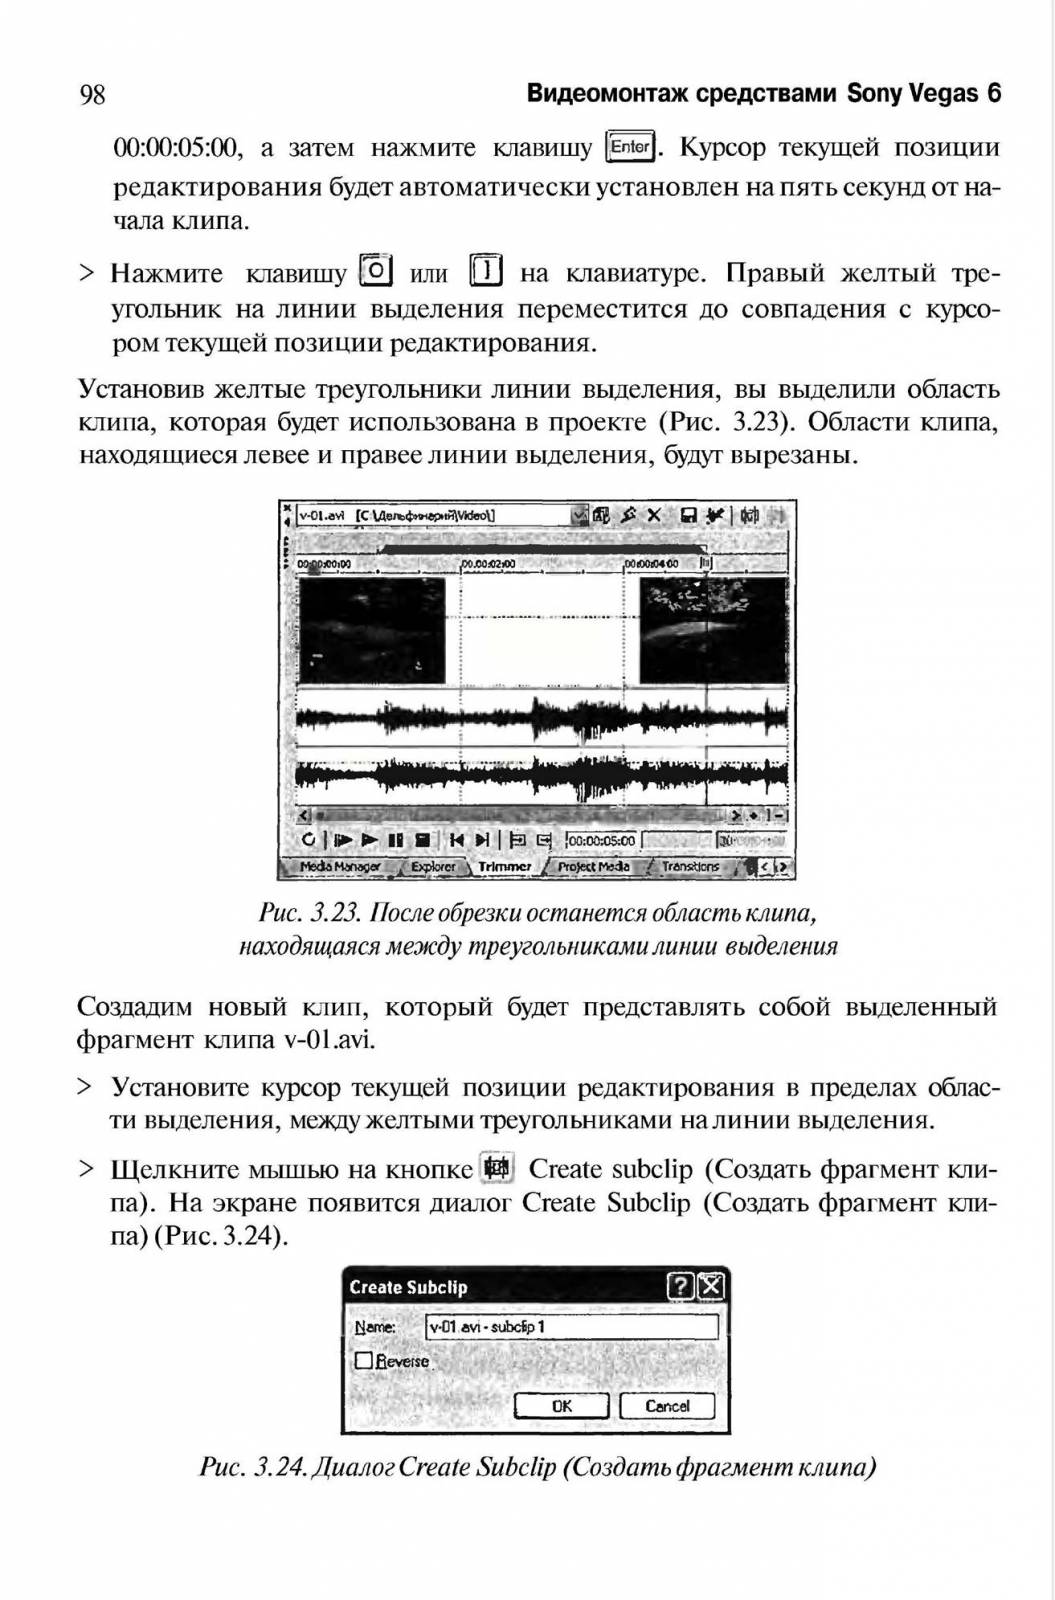 http://redaktori-uroki.3dn.ru/_ph/13/374093093.jpg